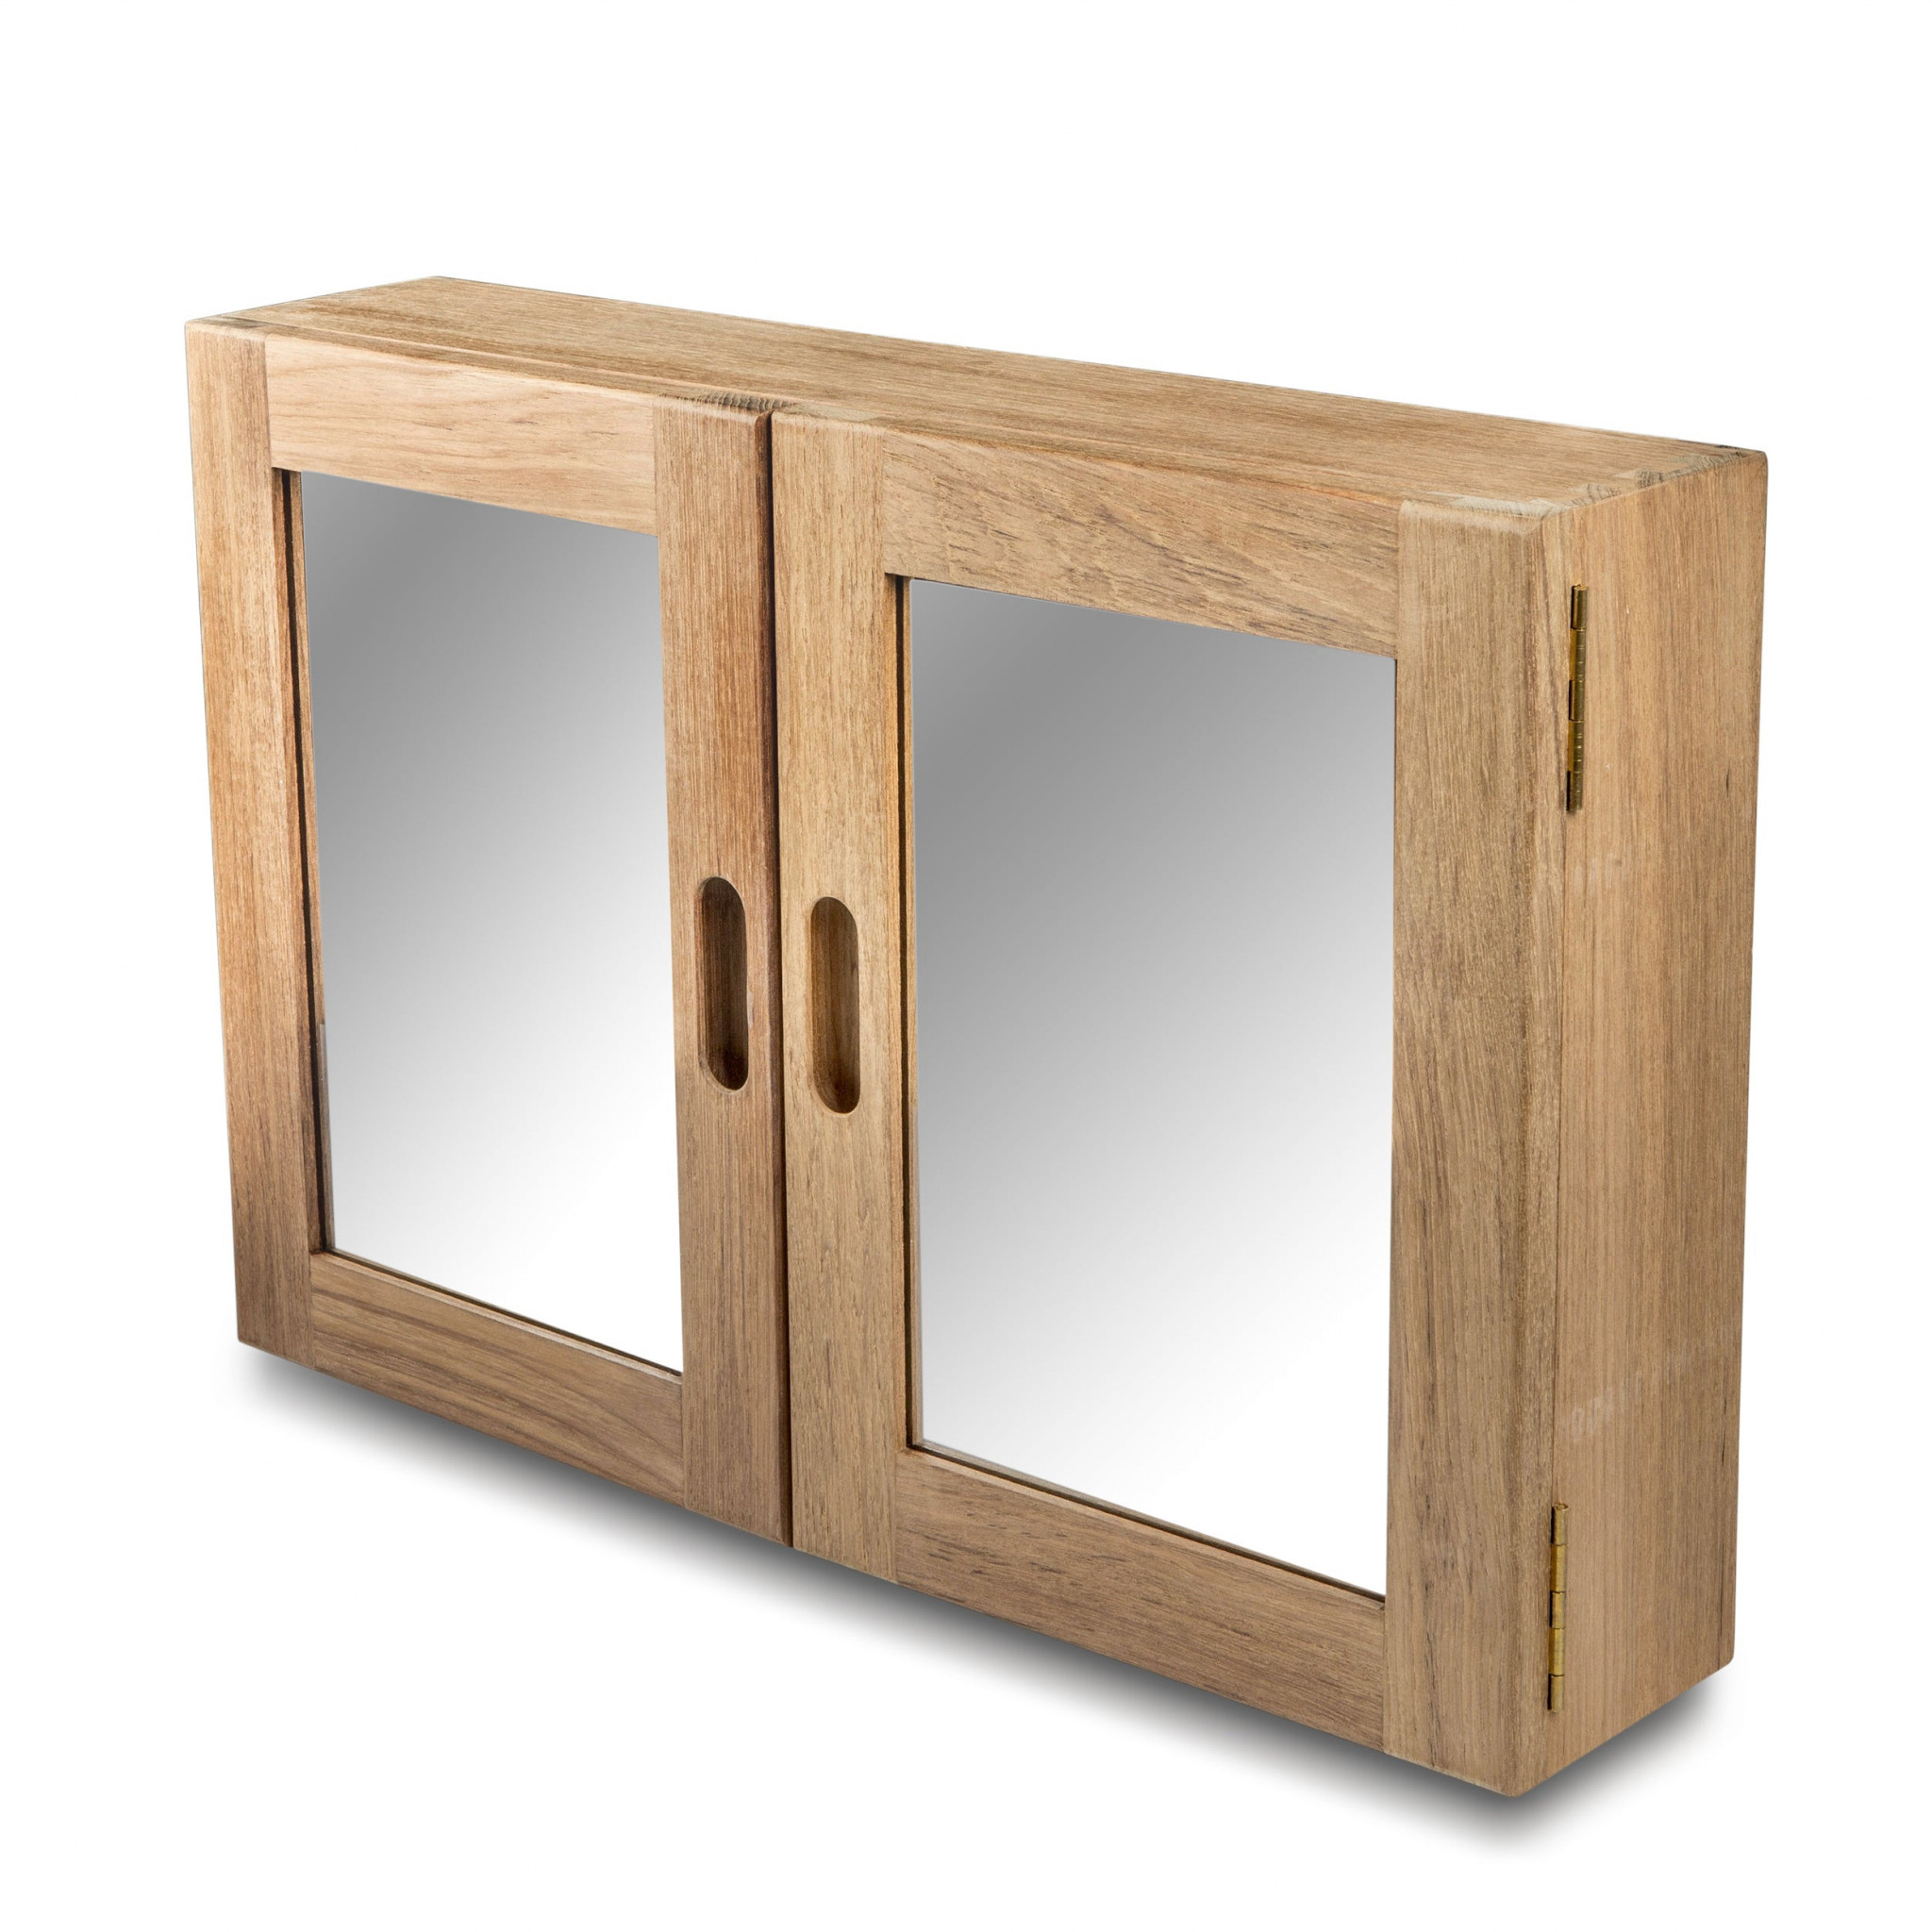 Traditional Solid Teak Double Door Mirrored Medicine Cabinet